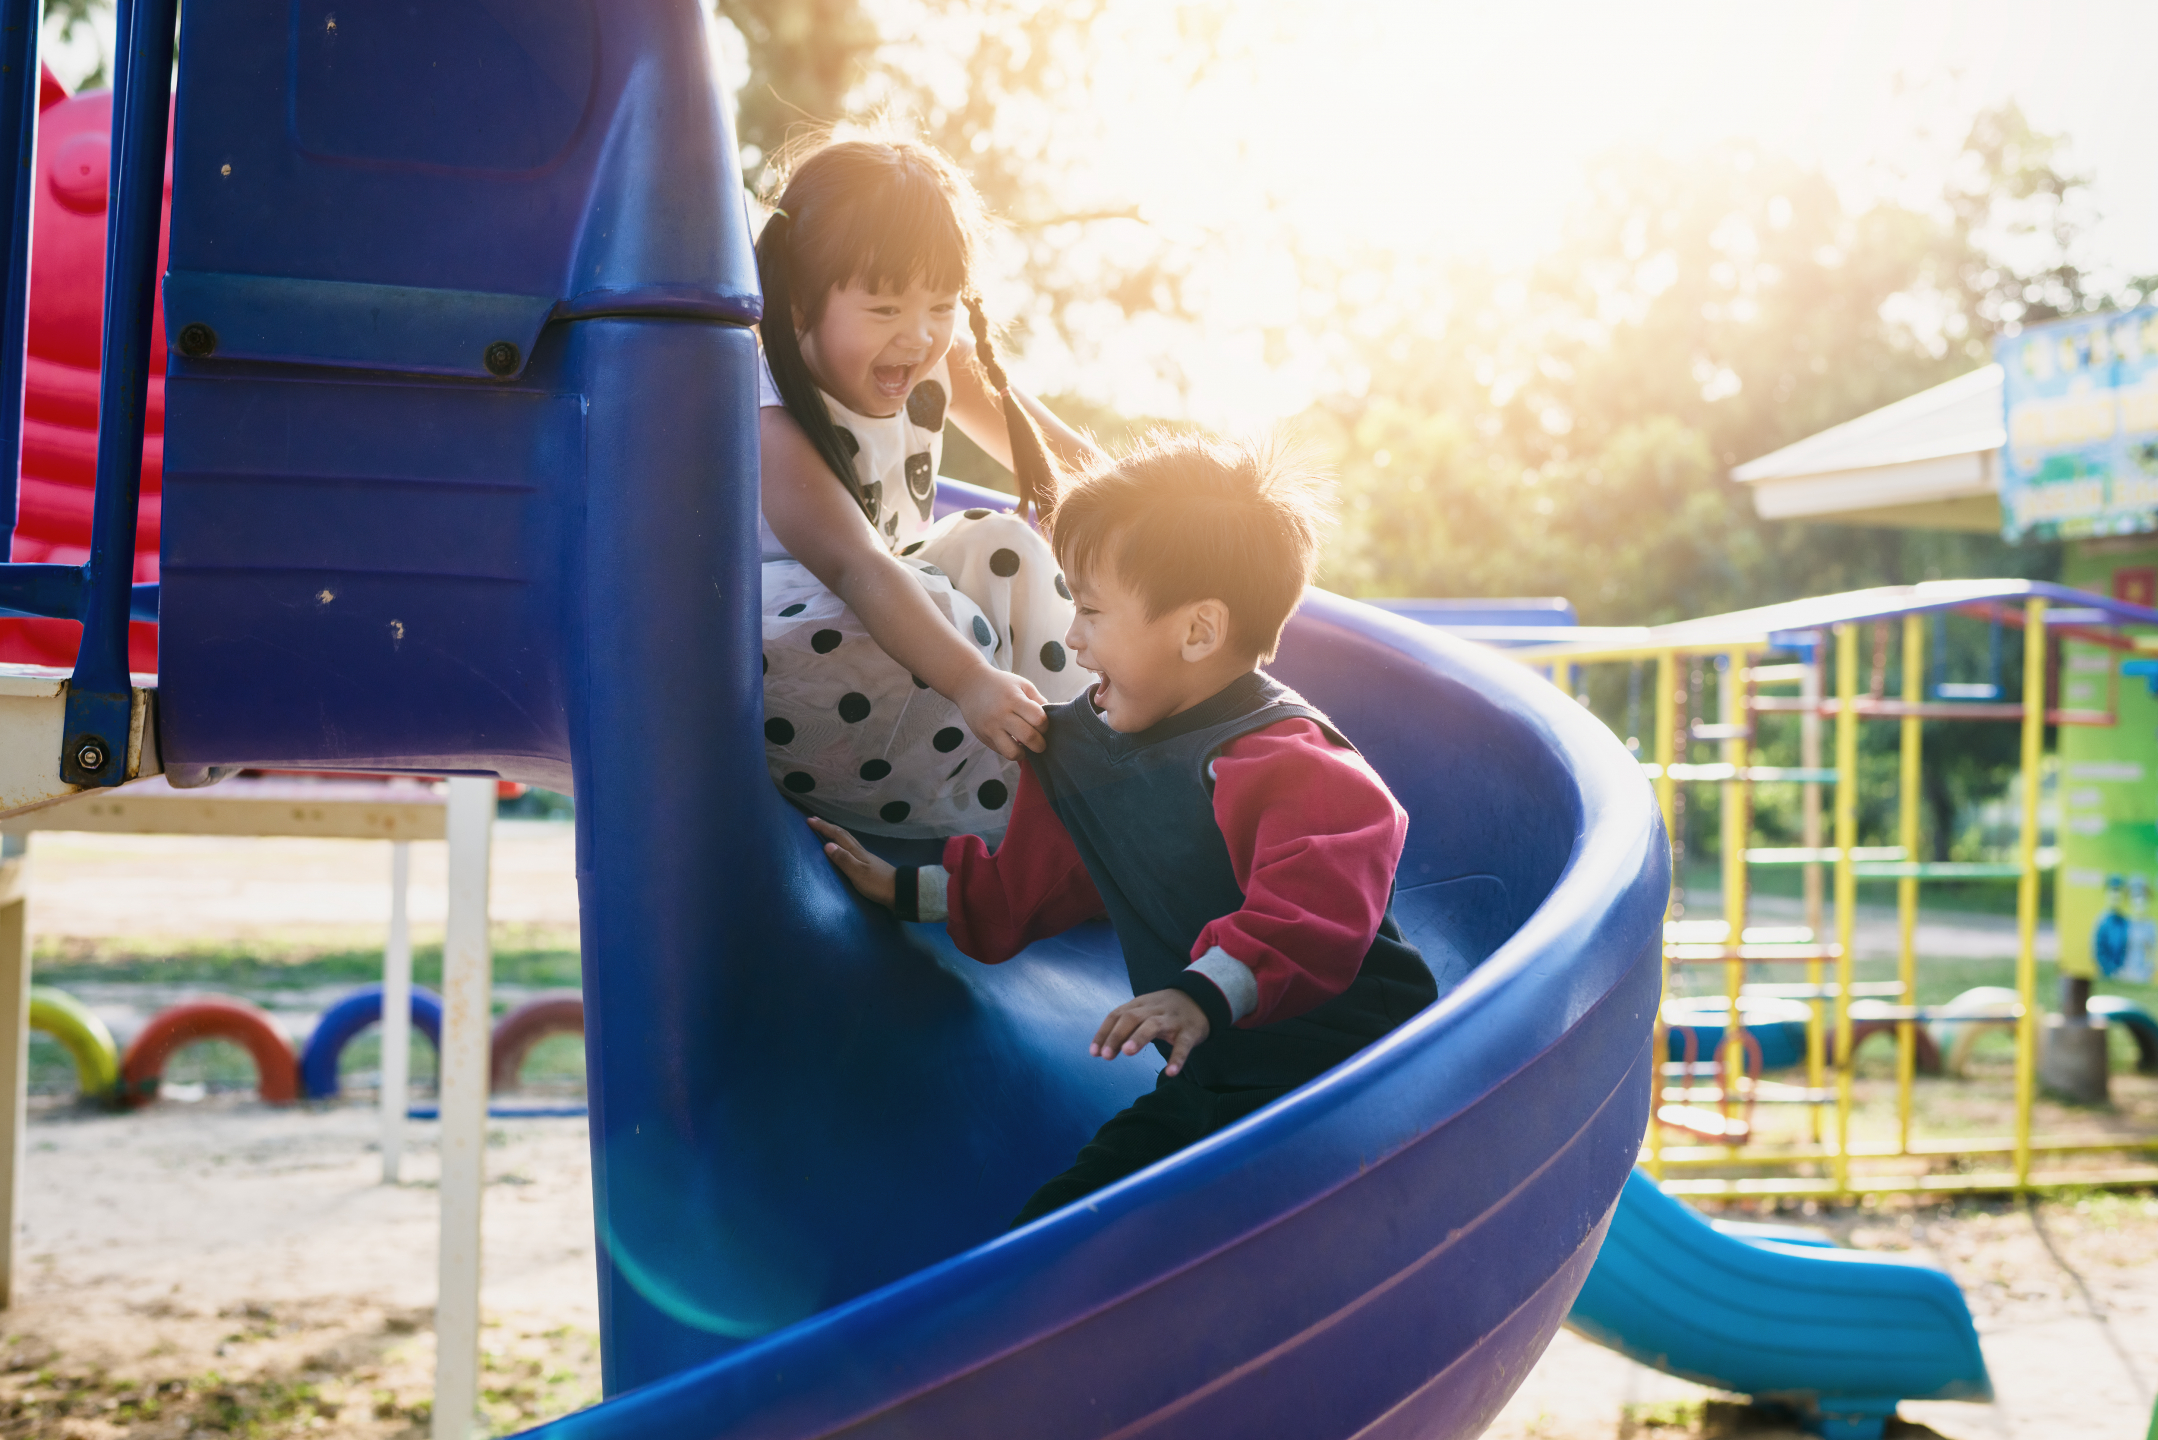 Children ride down a blue slide